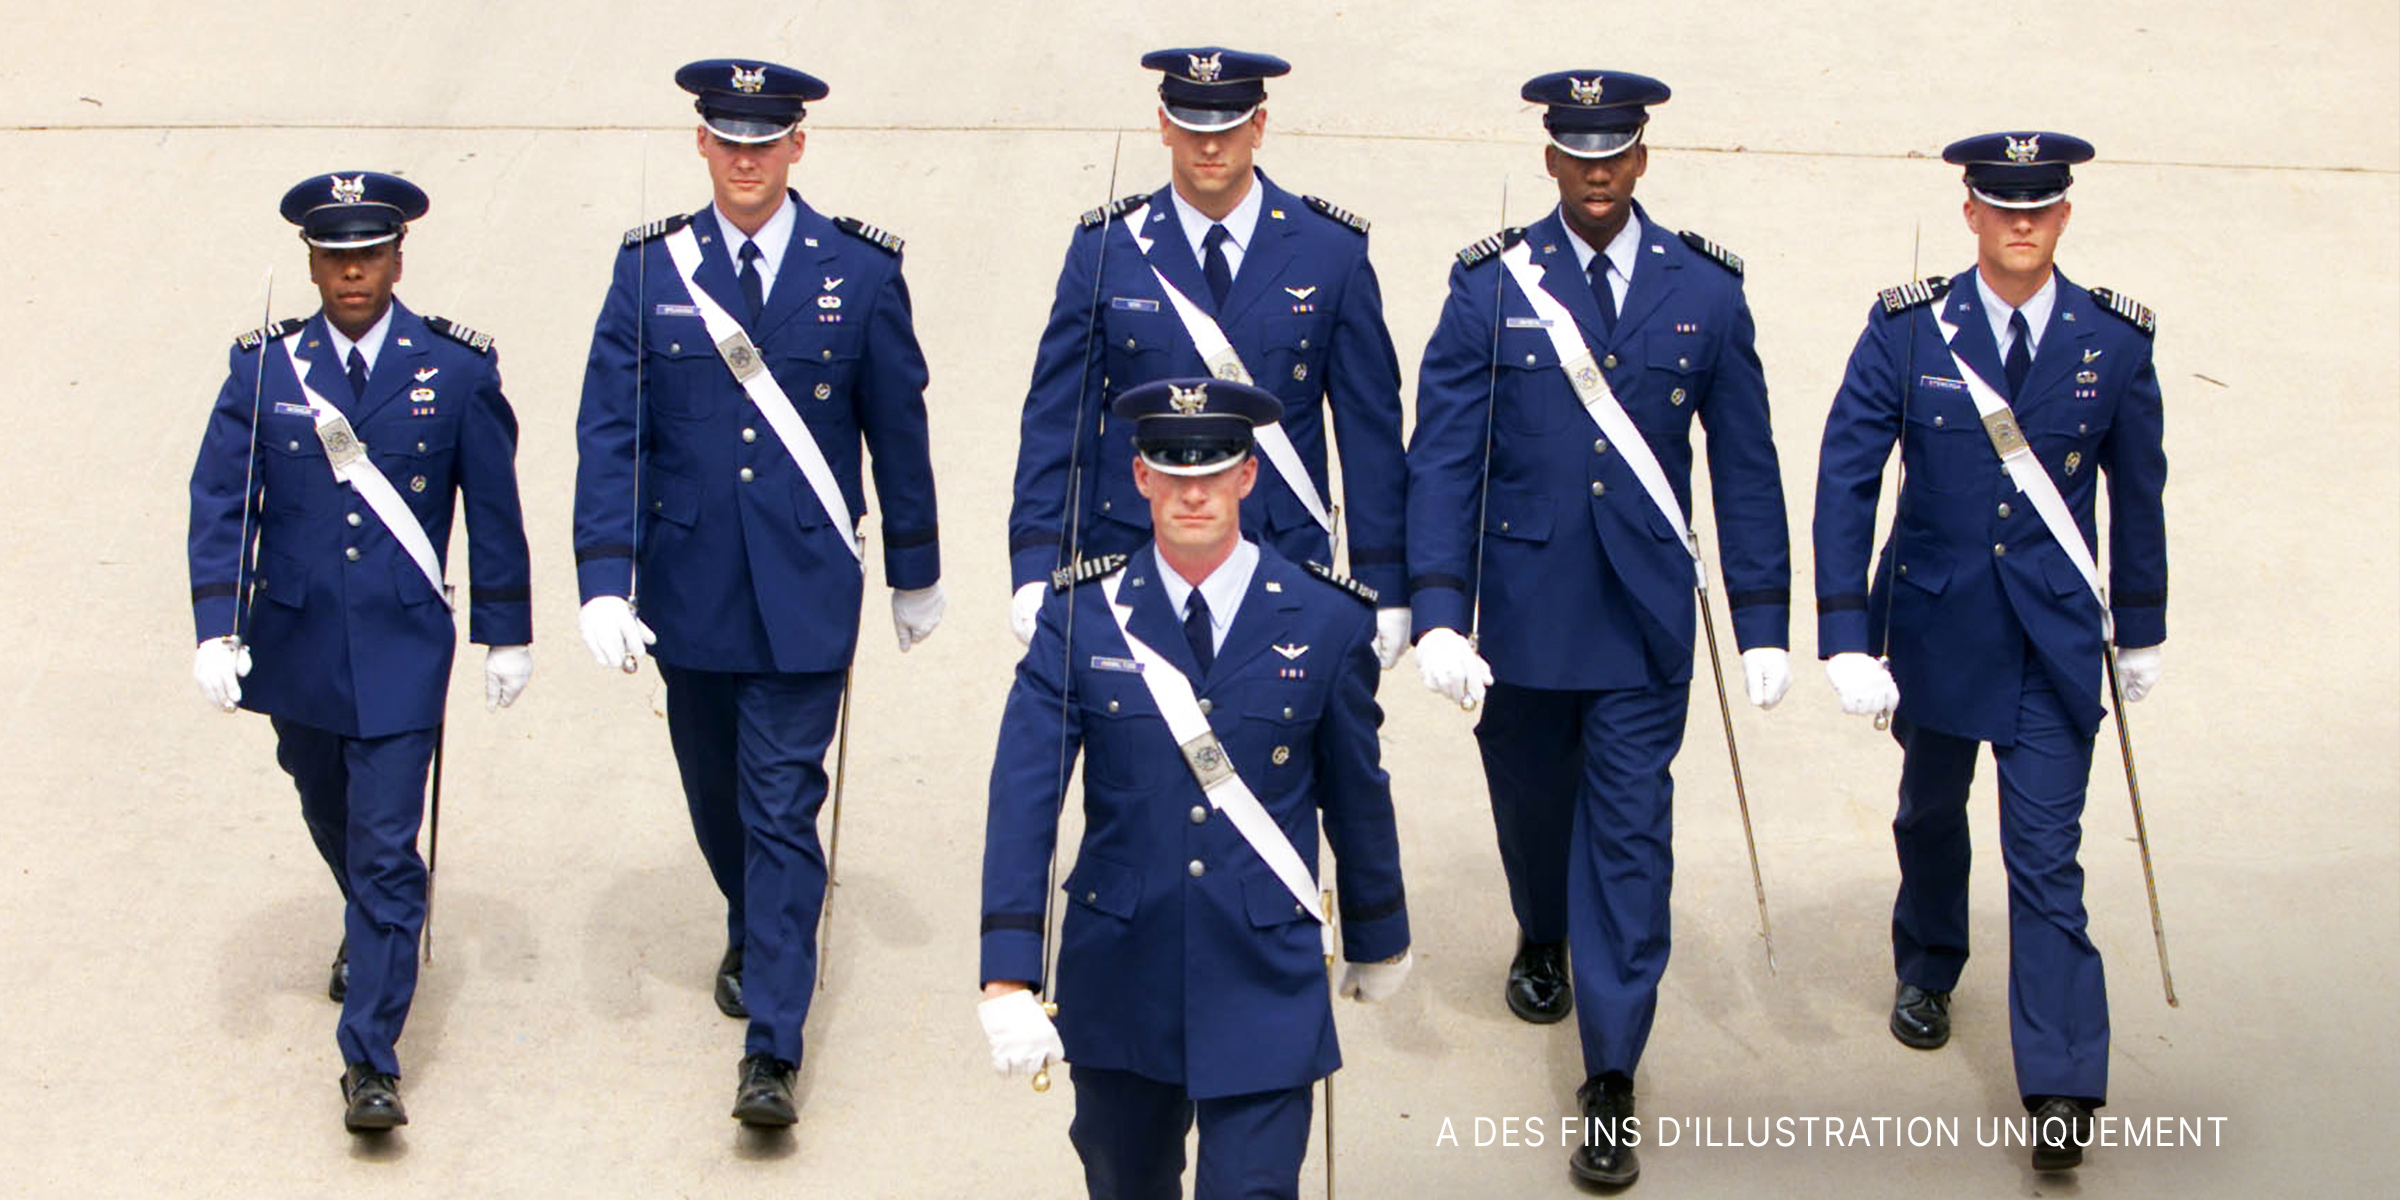 Un groupe de six cadets marchant ensemble | Source : Getty Images